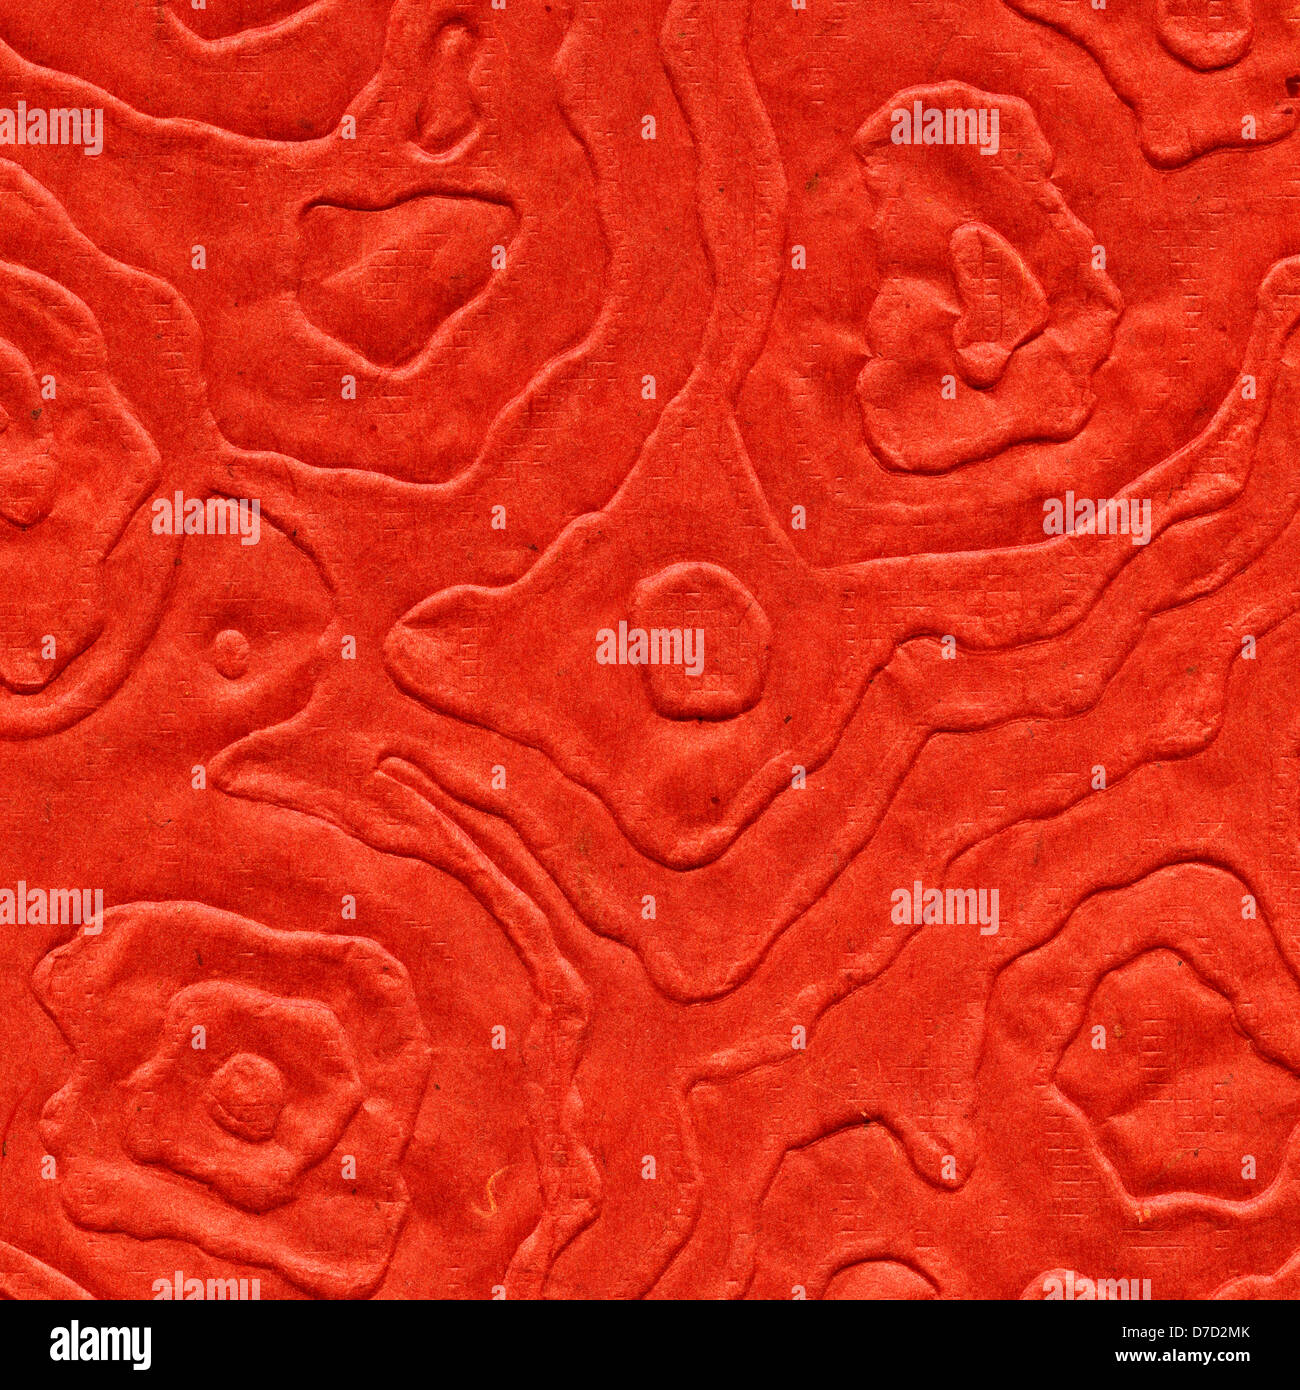 Scansione ad alta risoluzione in rosso la carta di riso motivo decorativo realizzato mandala anamorfici. Acquisite a 2400dpi utilizzando professional Epson V700 Foto Stock